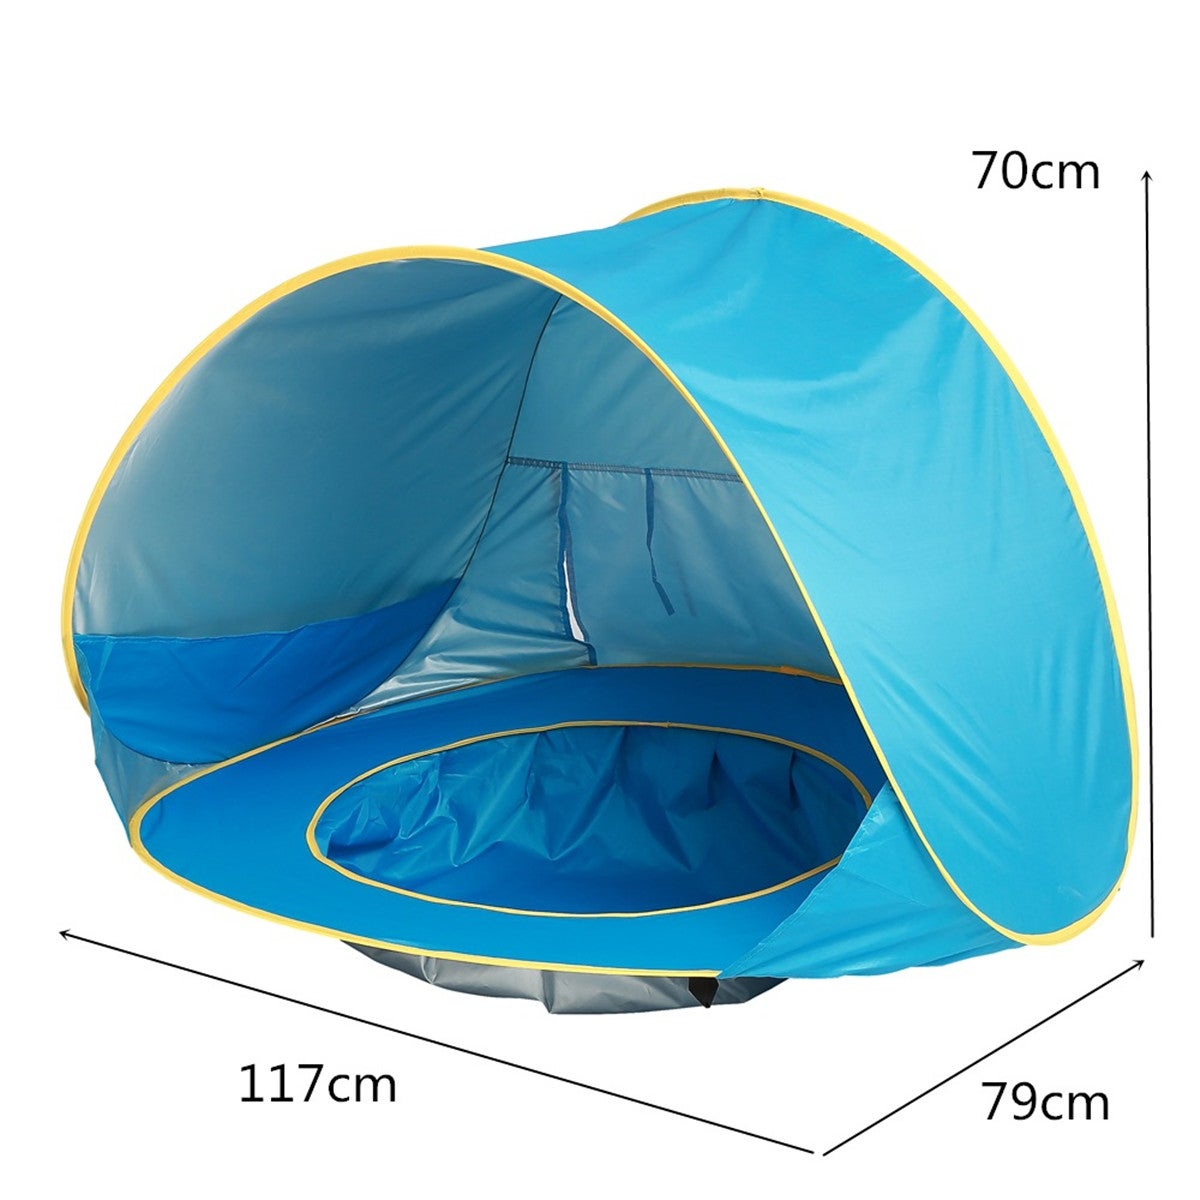 Tente Tipoo Tipi Tente de Jeu en Coton pour Enfant avec 3 Matelas Tente Stable pour Fille et Fille pour la Maison et Le Jardin